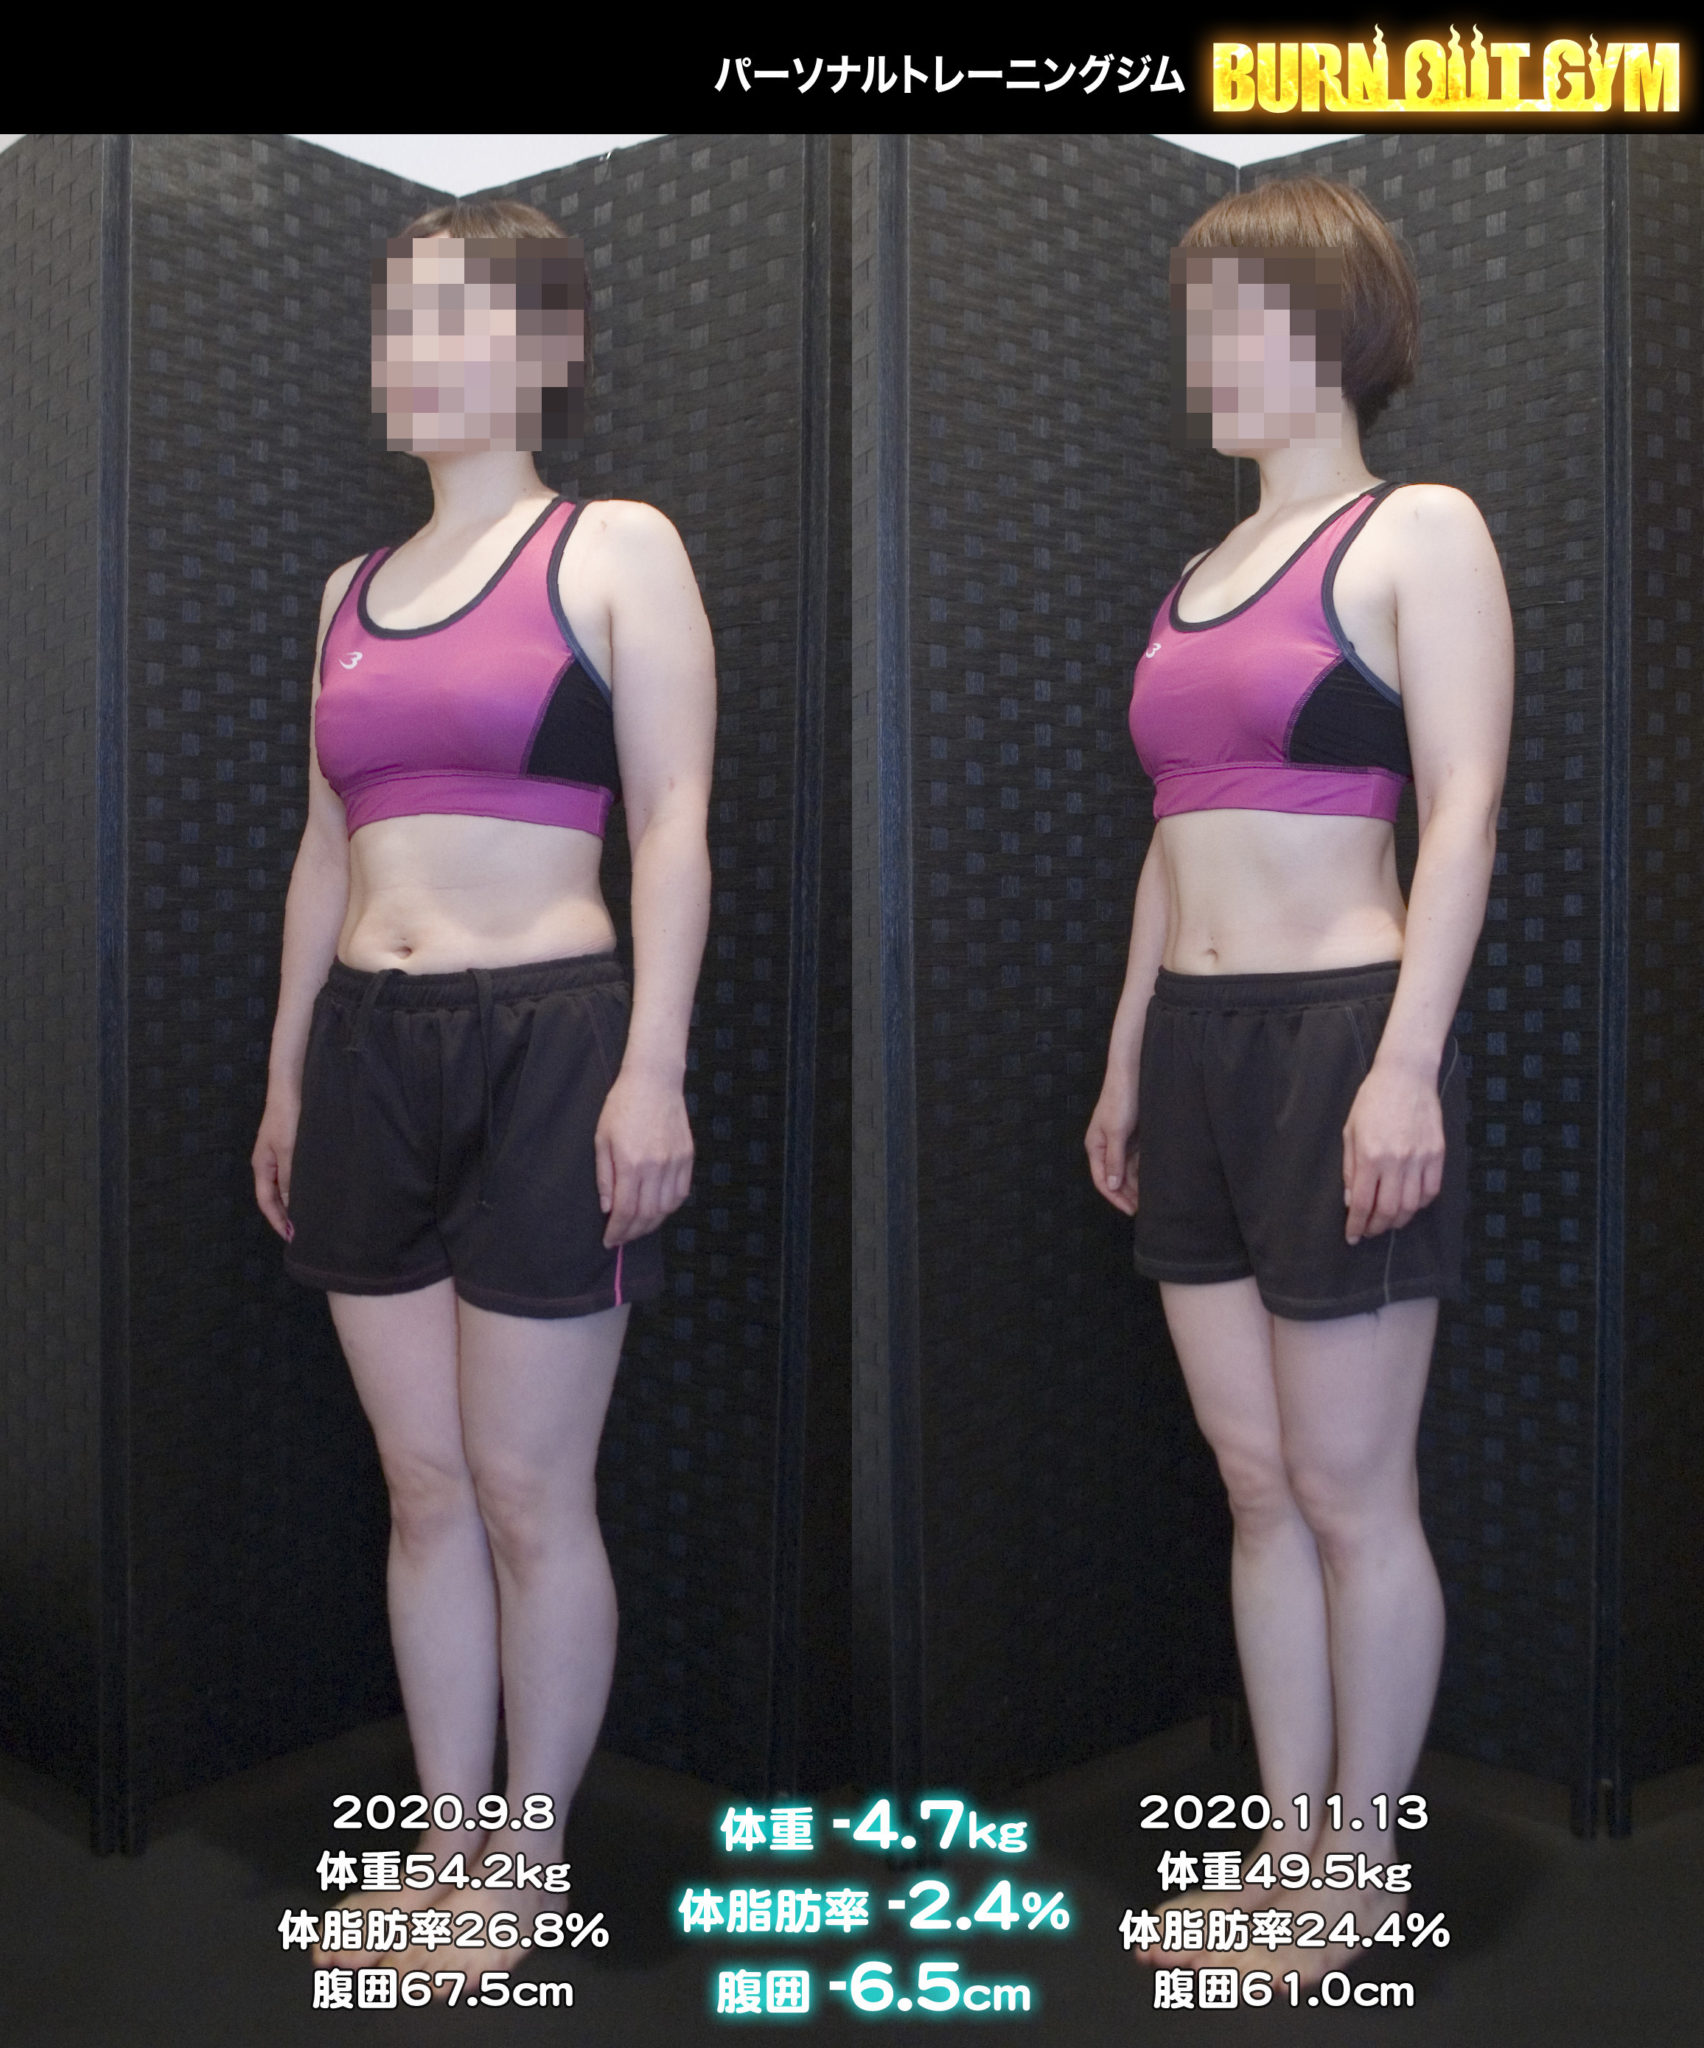 体験者 30代 女性 身長150cm台W・Xさんのダイエット事例 パーソナルトレーニング・ダイエットジム BURN OUT GYM